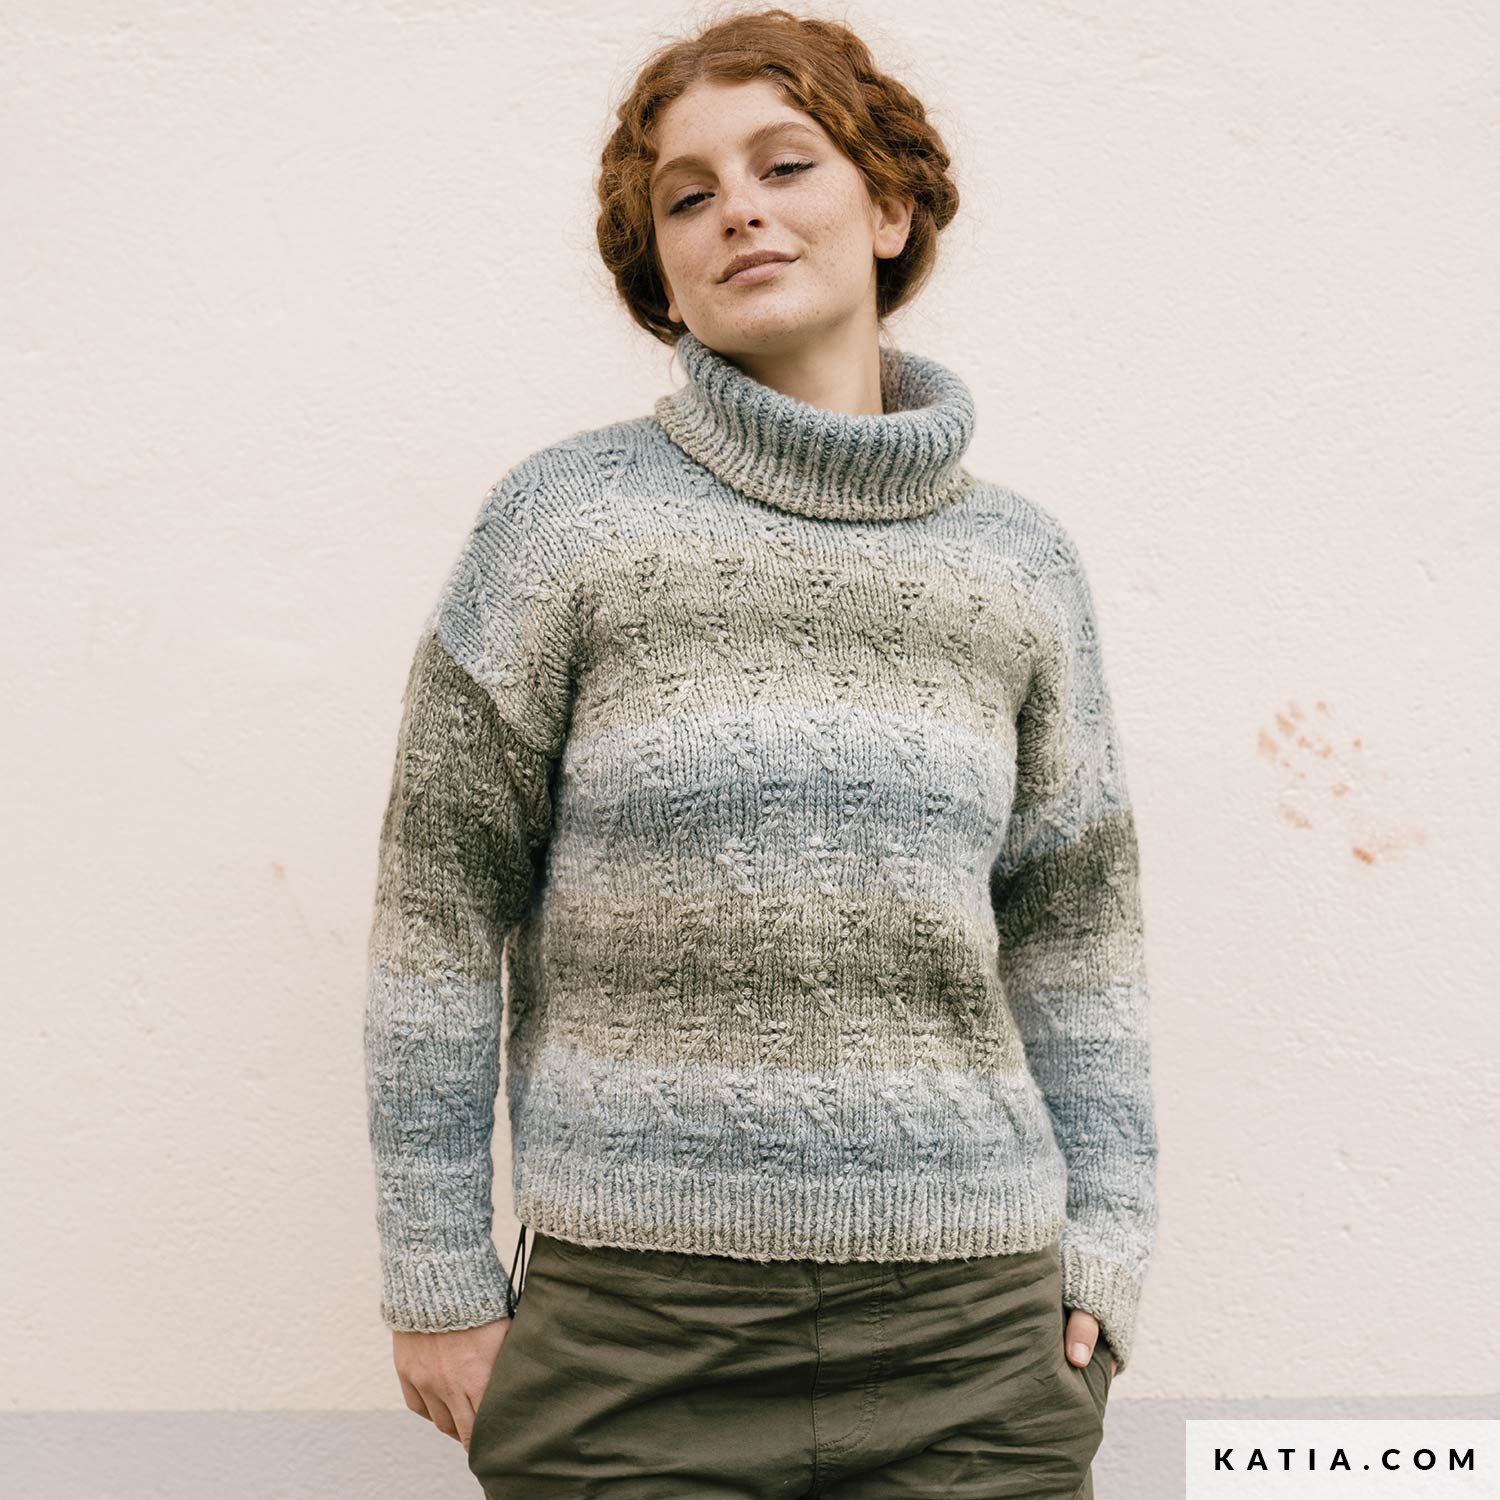 Modèle à tricoter pour débutant - Patron tricot gratuit débutant